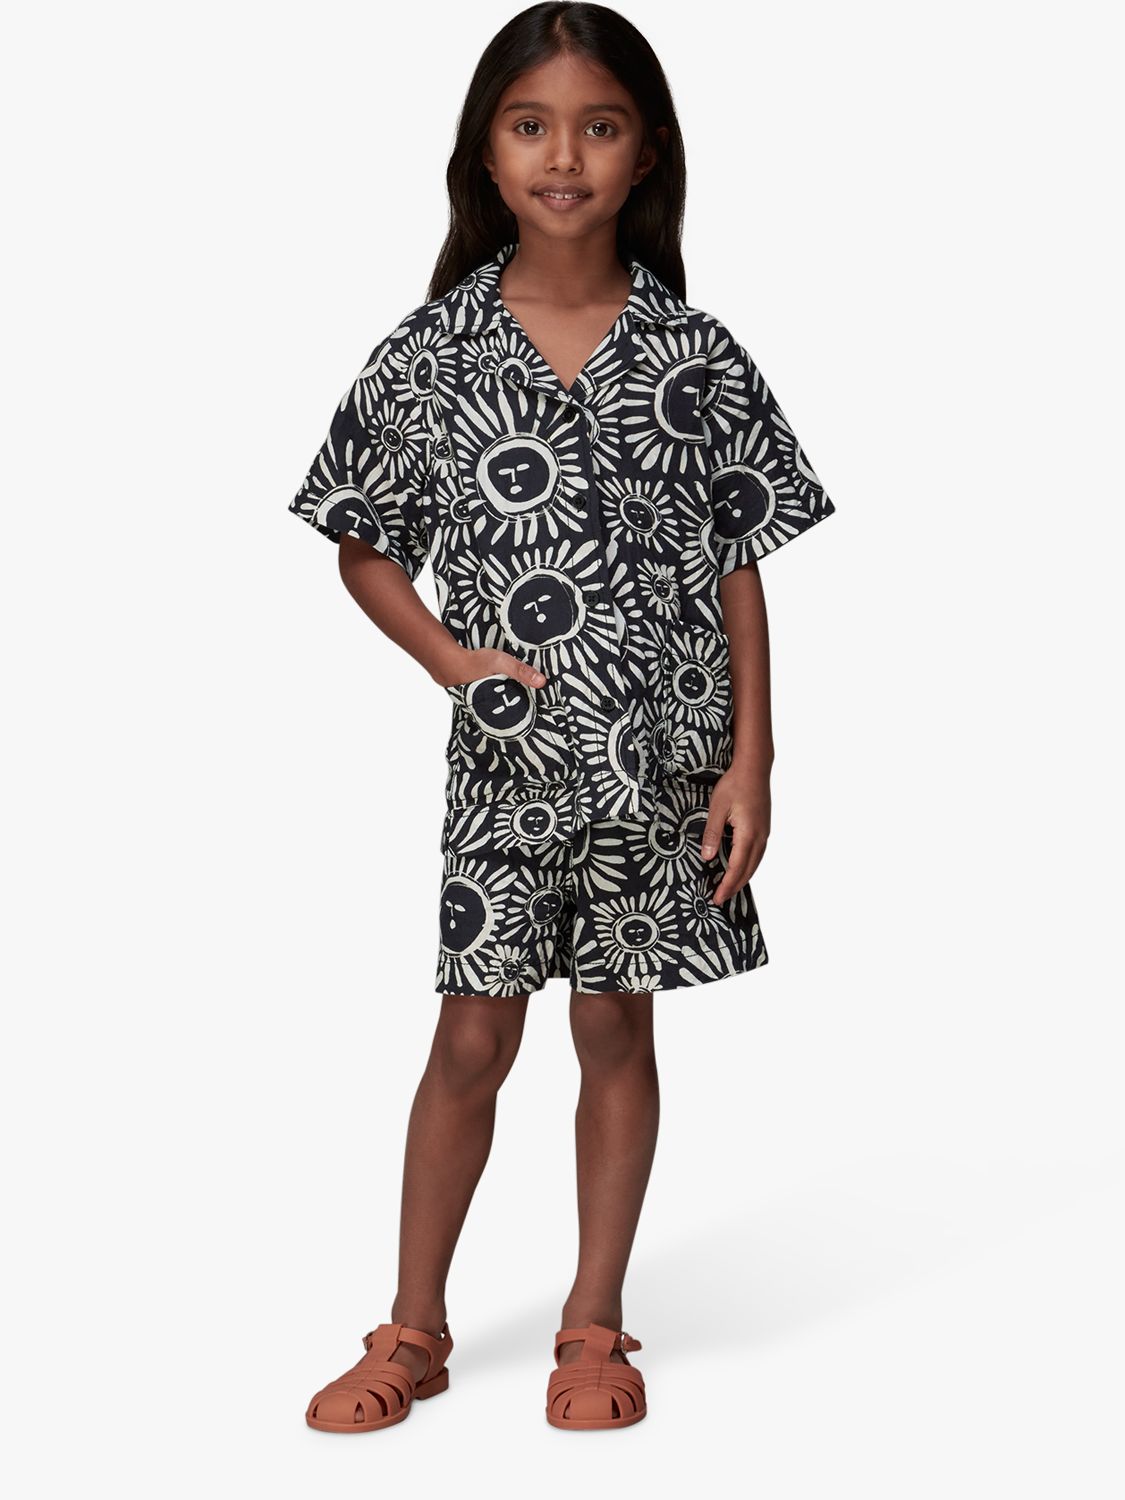 Whistles Kids' Sunman Sunny Linen Blend Shorts, Black/Multi, 7-8 years